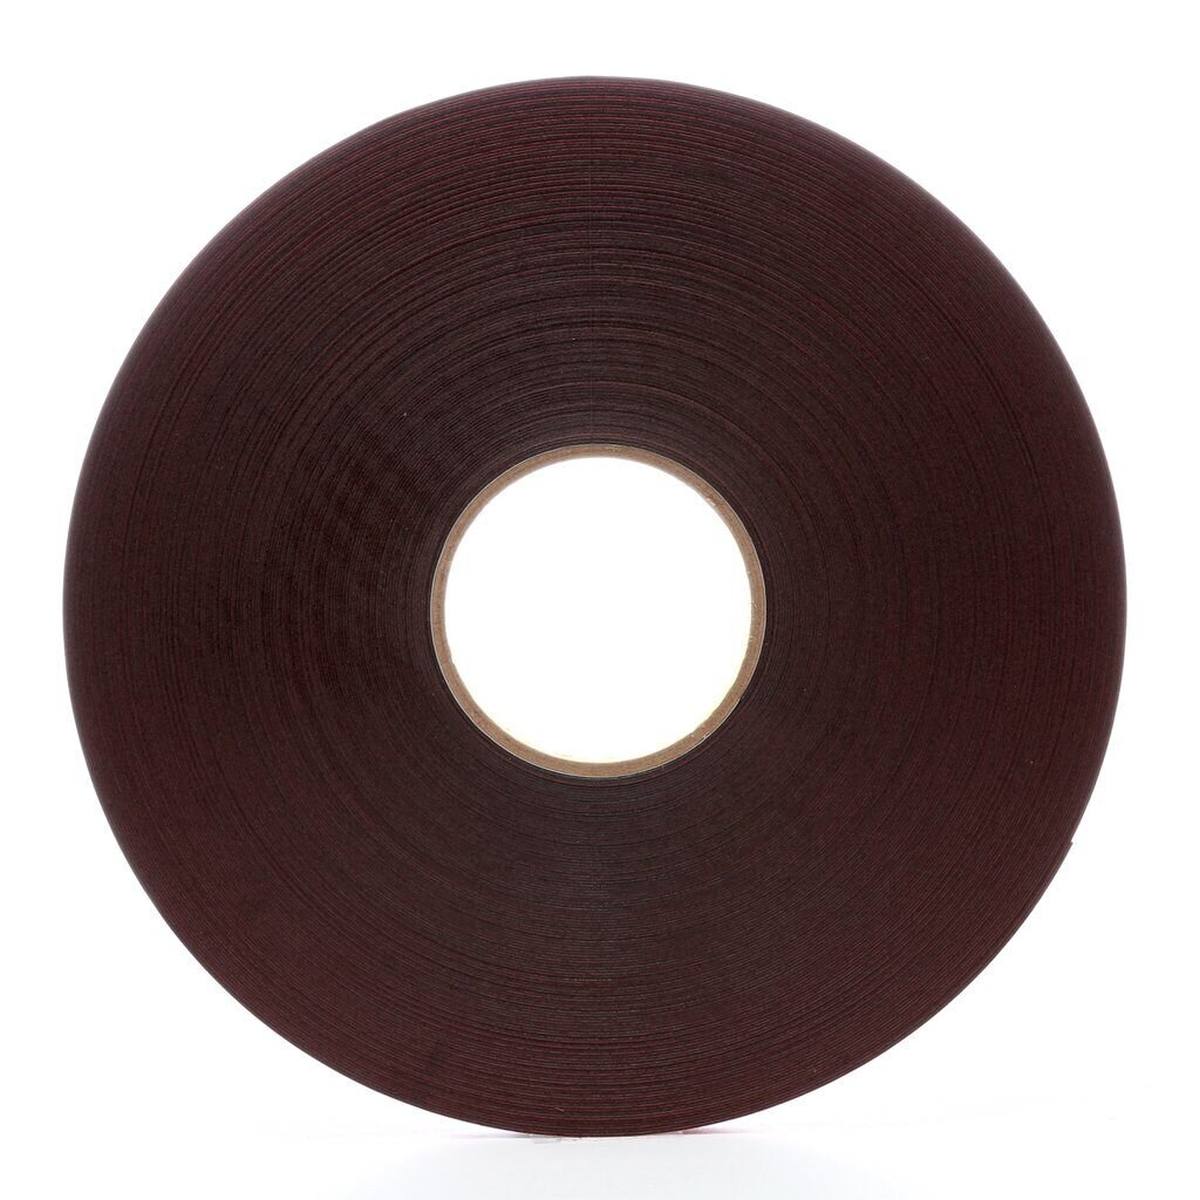 3M VHB adhesive tape 5925F, black, 9 mm x 33 m, 0.6 mm